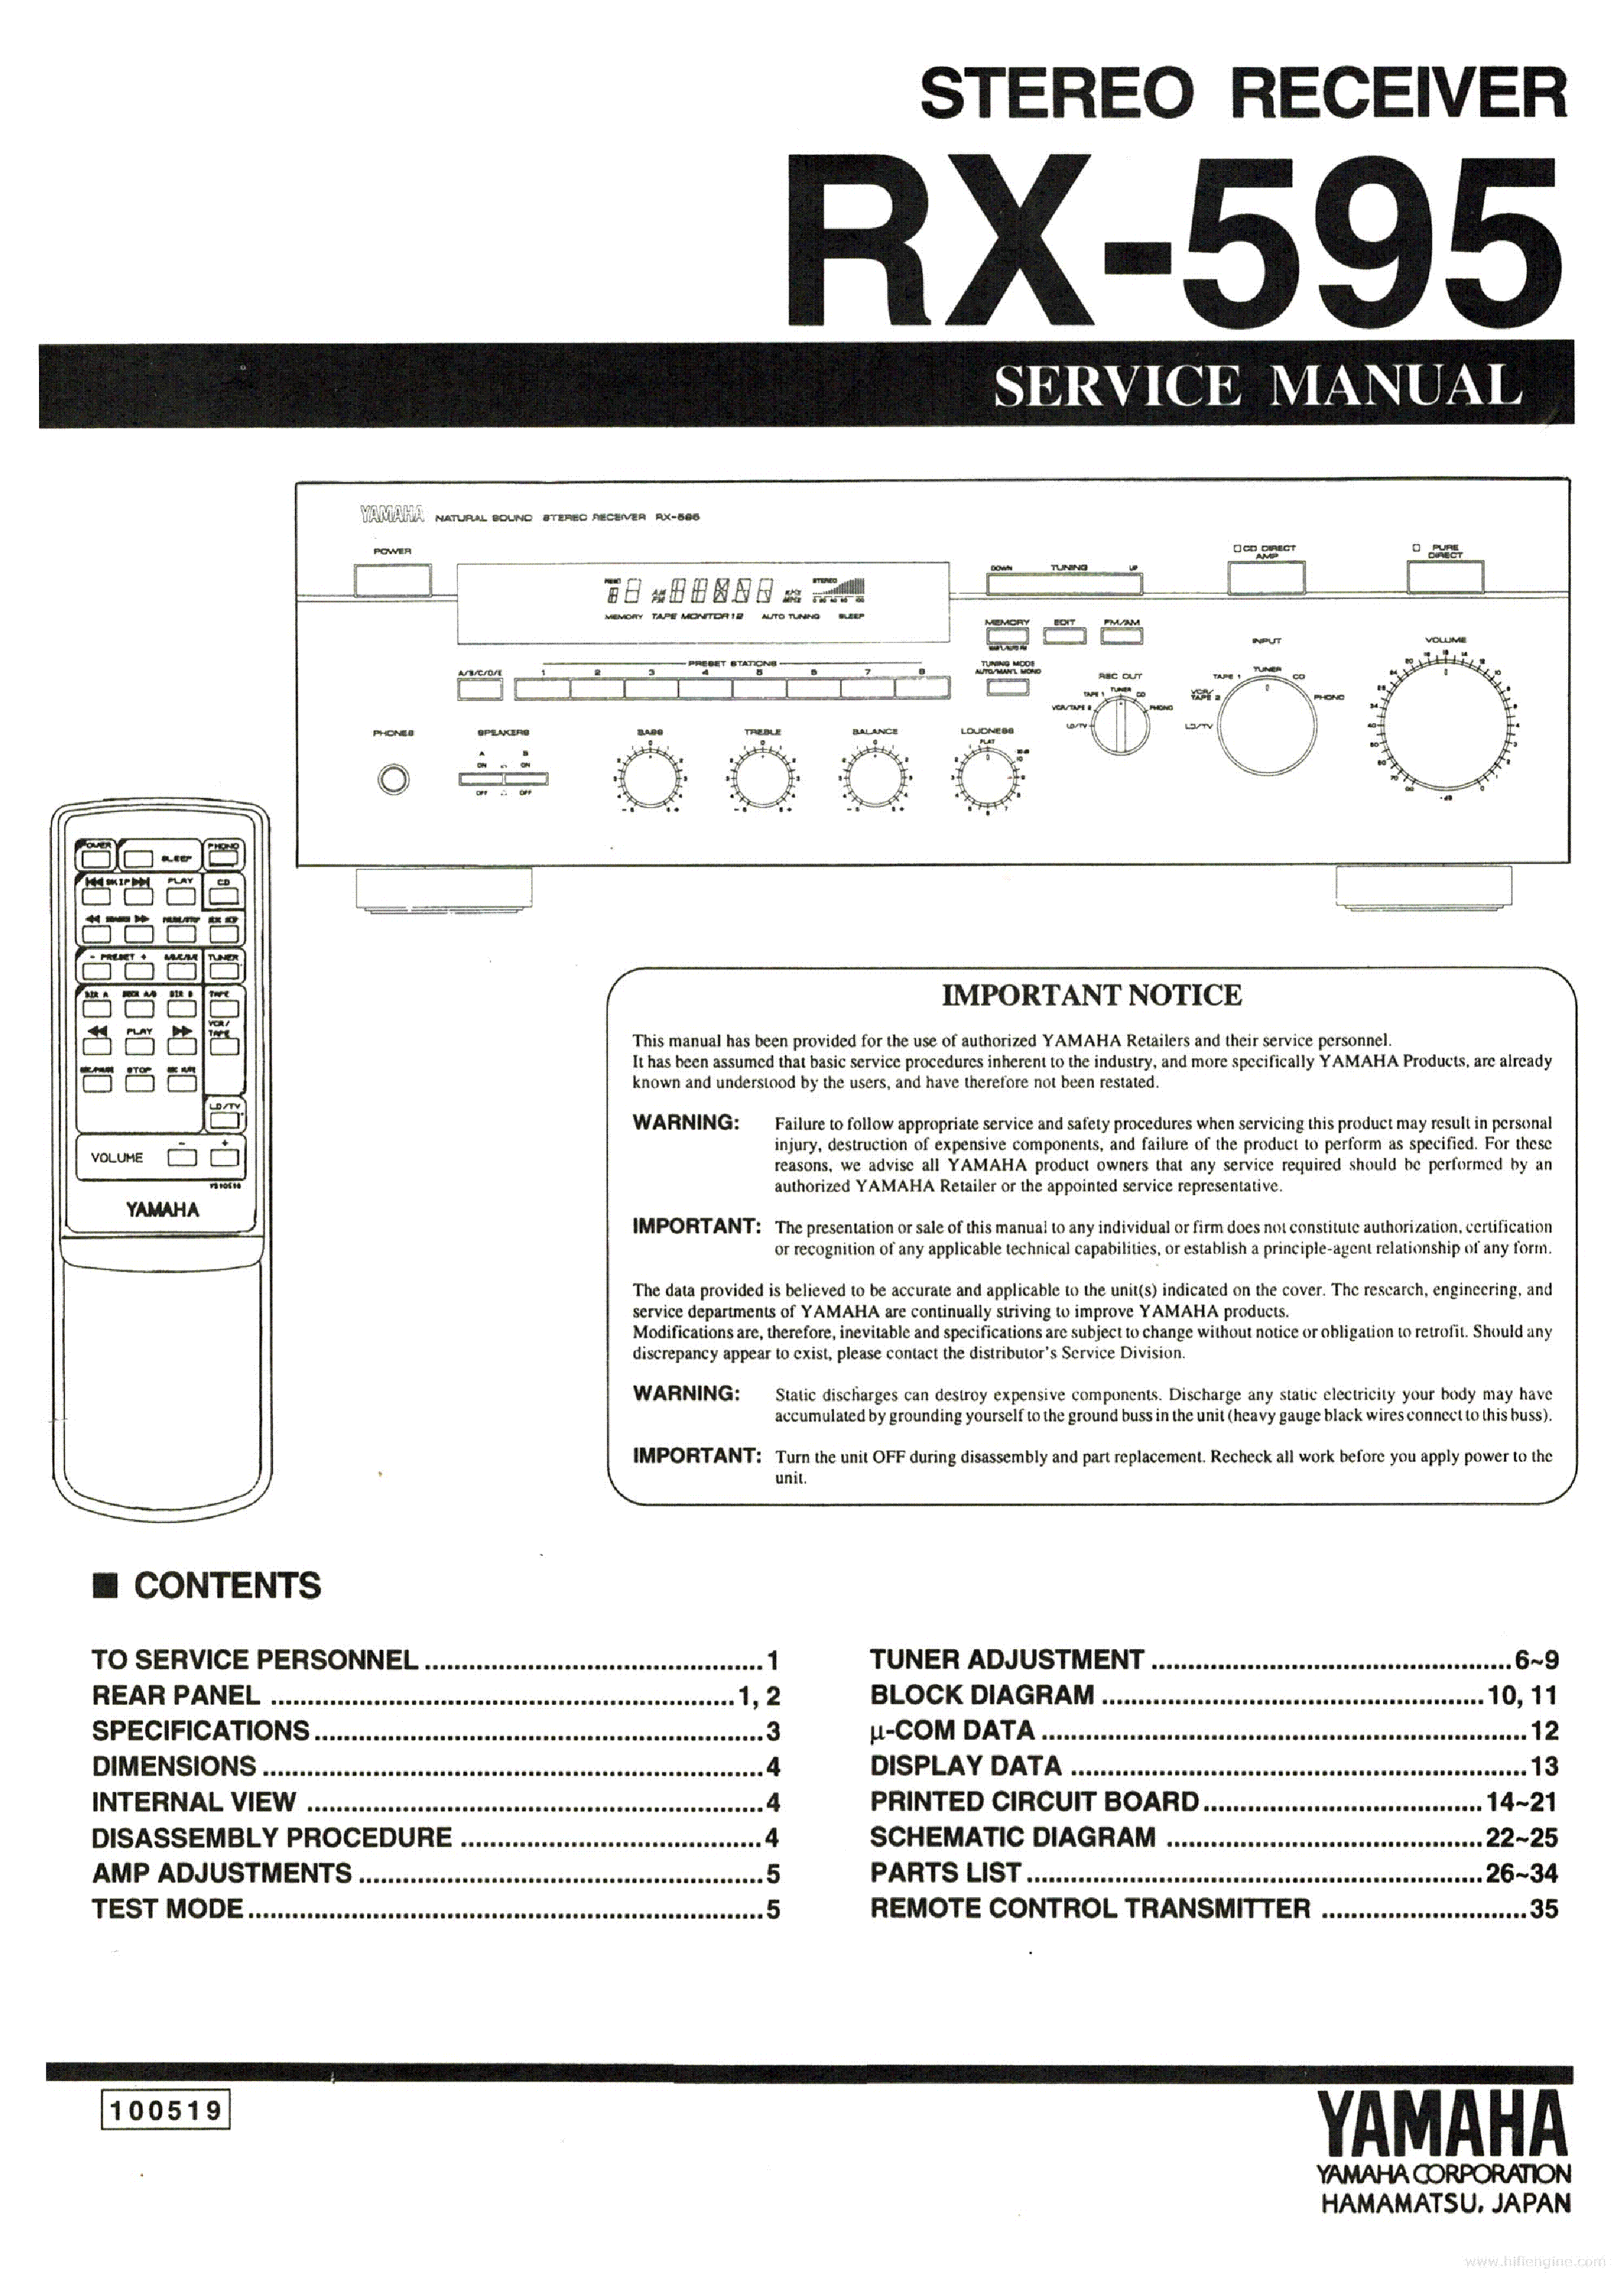 YAMAHA RX-595 service manual (1st page)